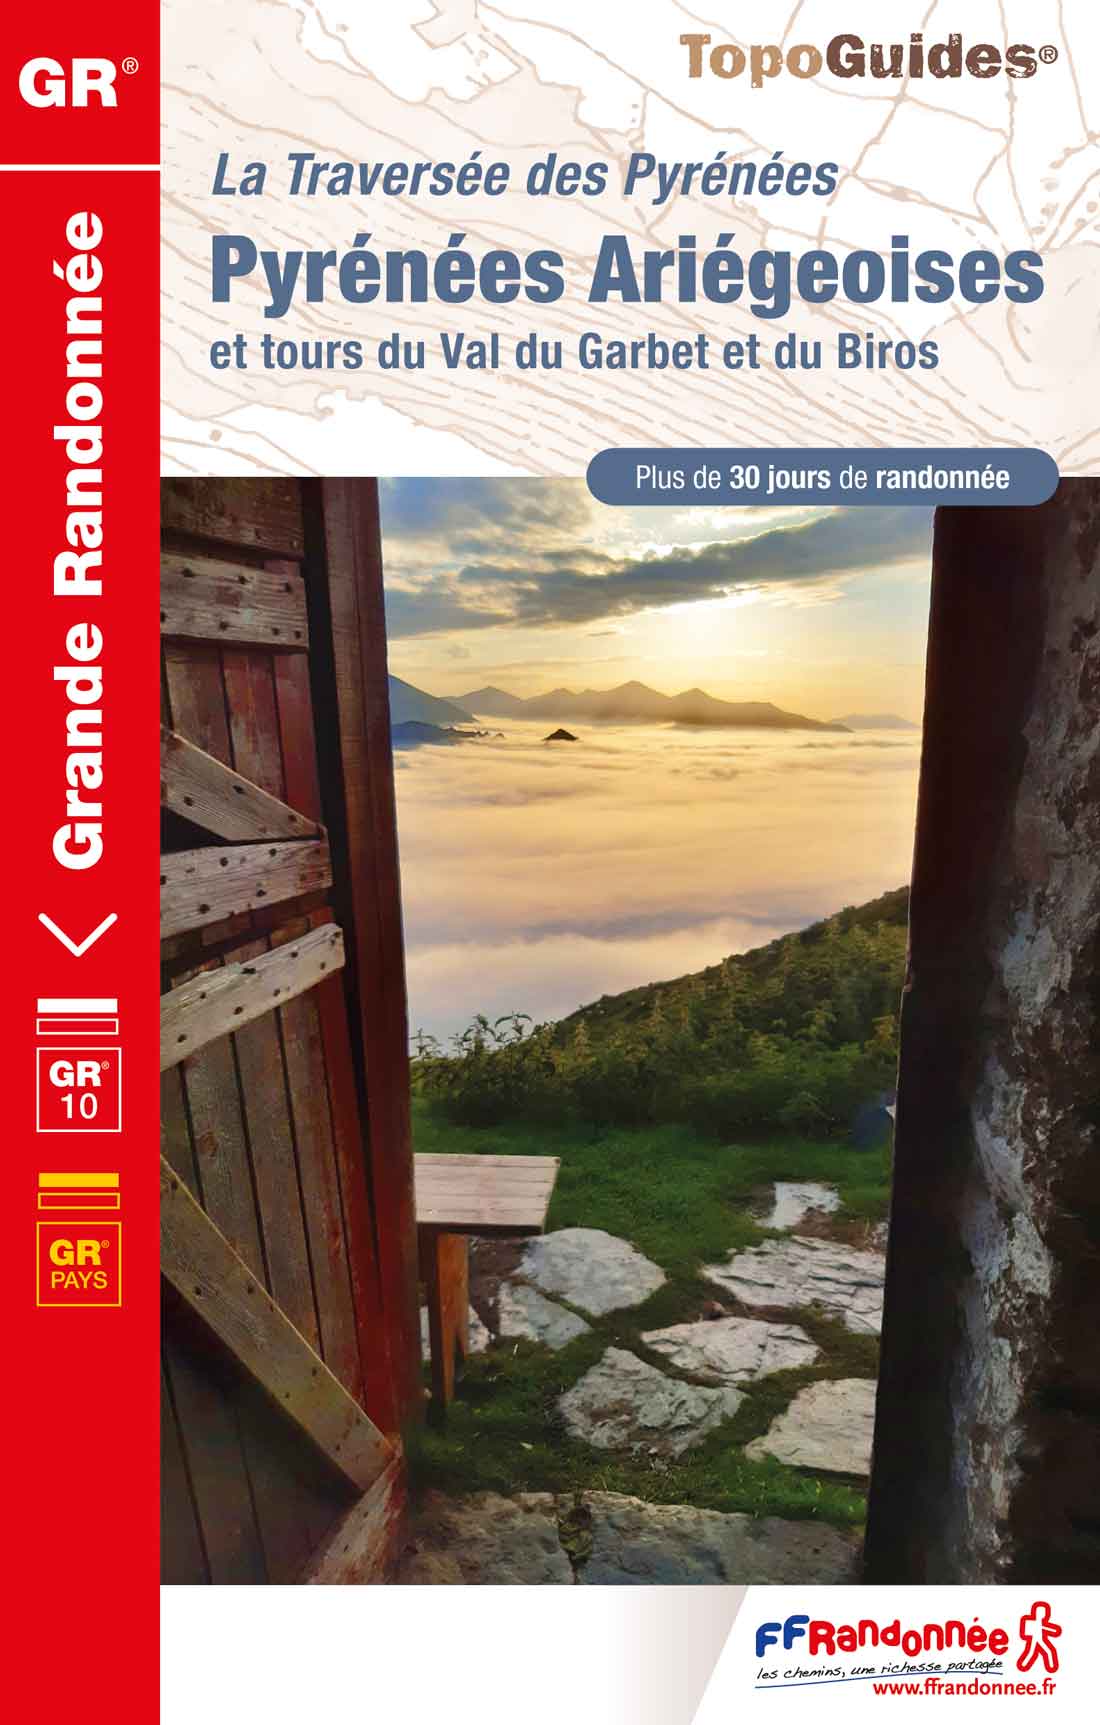 La traversée des Pyrénées ariégeoises- GR10  